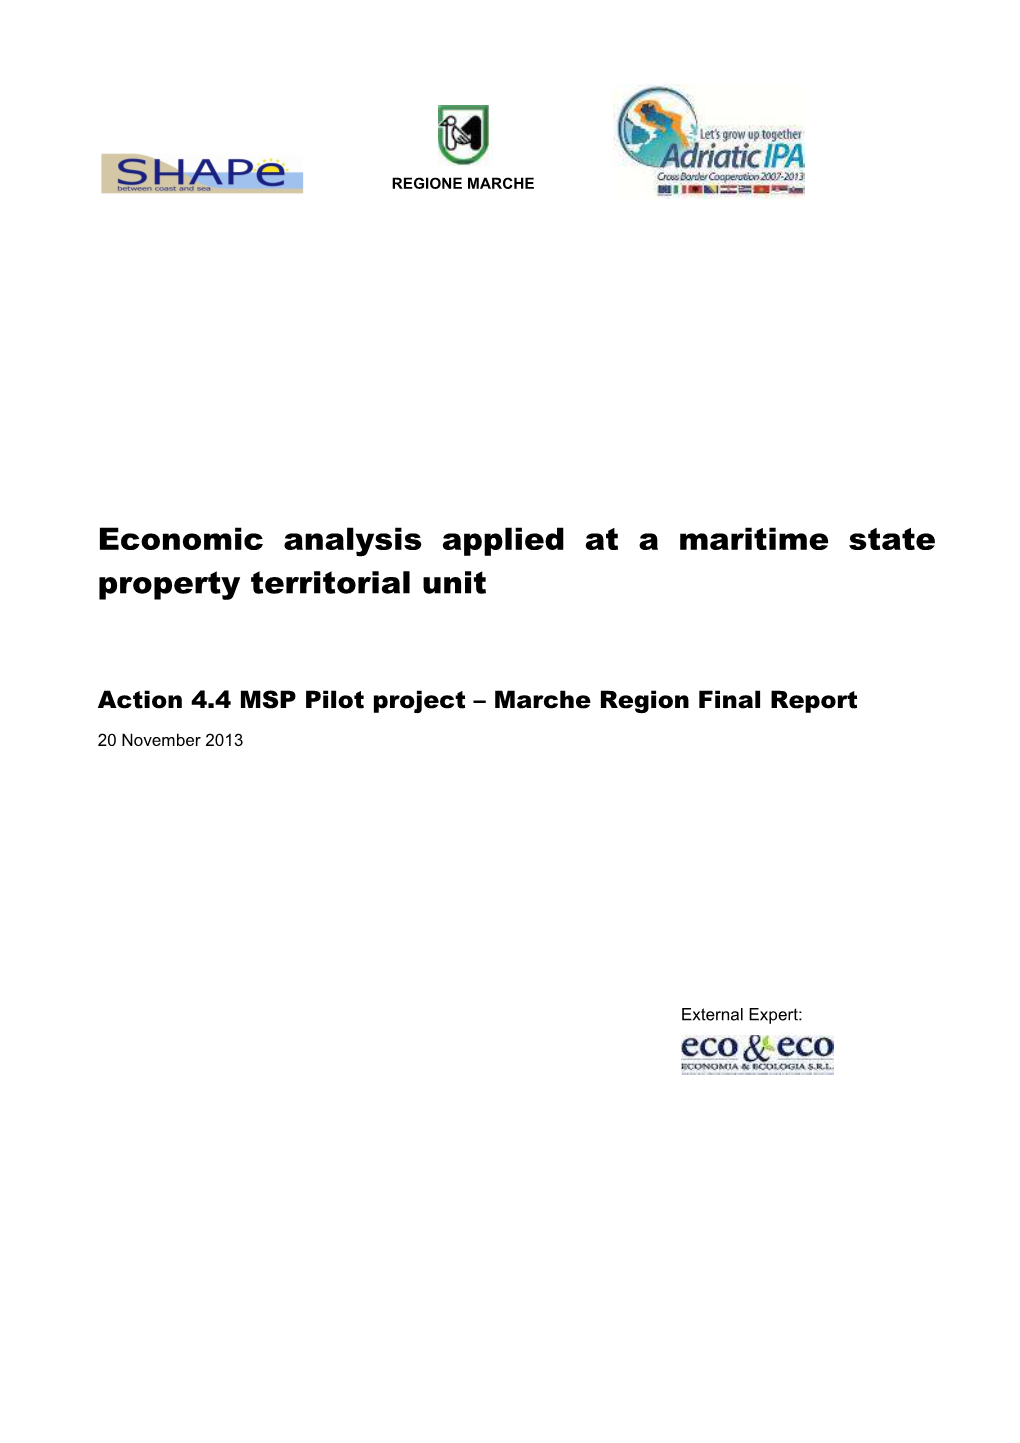 Marche Pilot Project Final Report